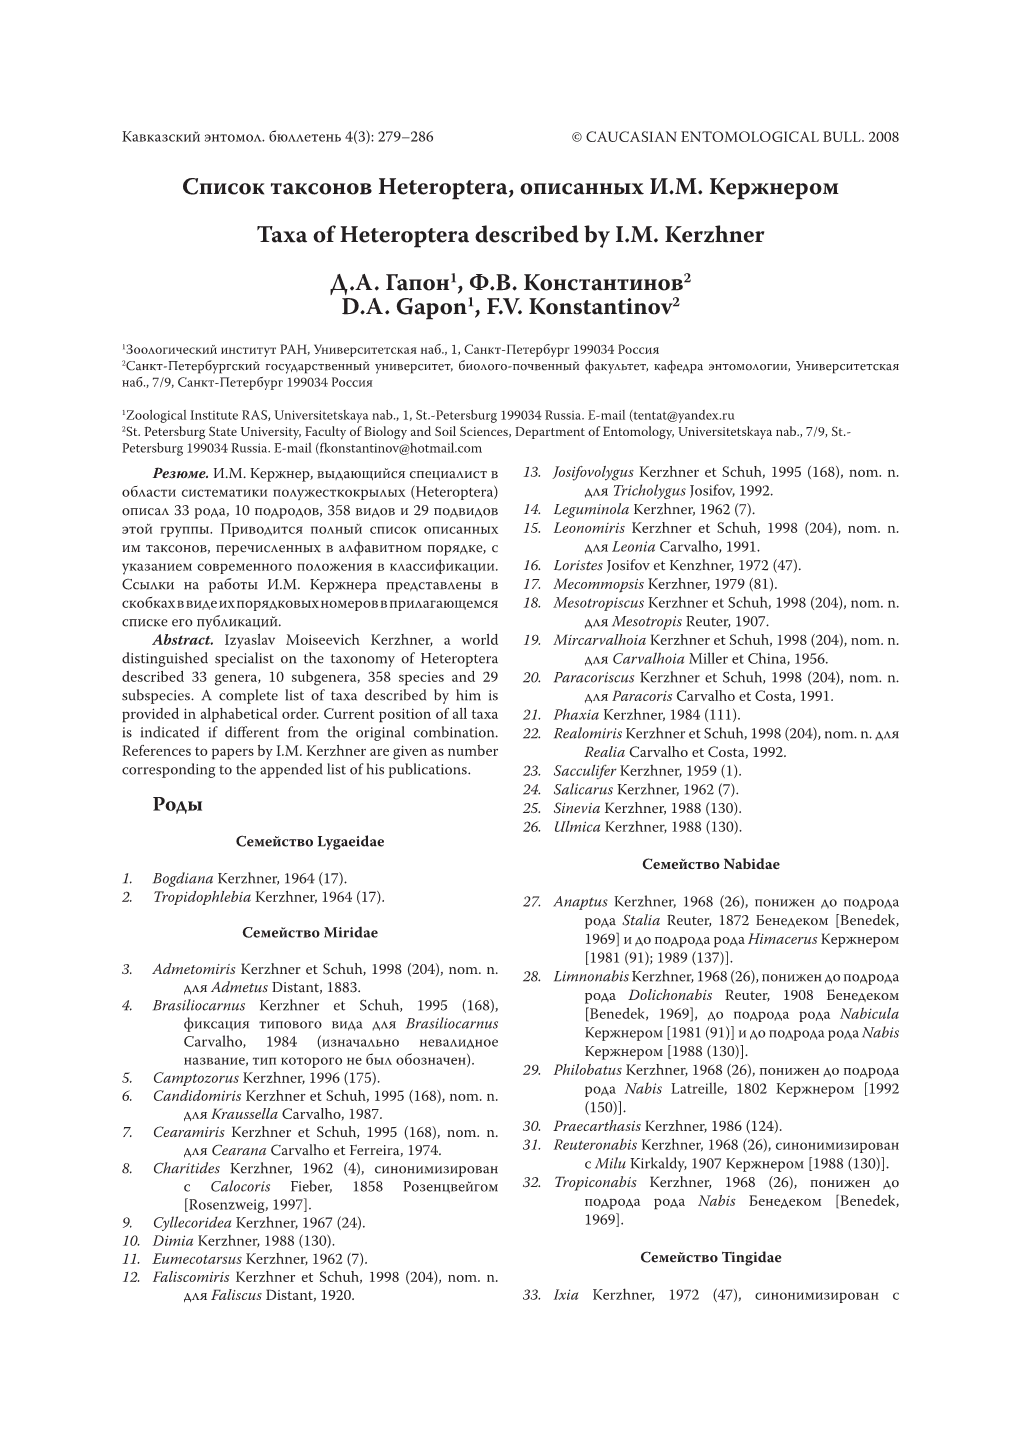 Список Таксонов Heteroptera, Описанных И.М. Кержнером Taxa of Heteroptera Described by I.M